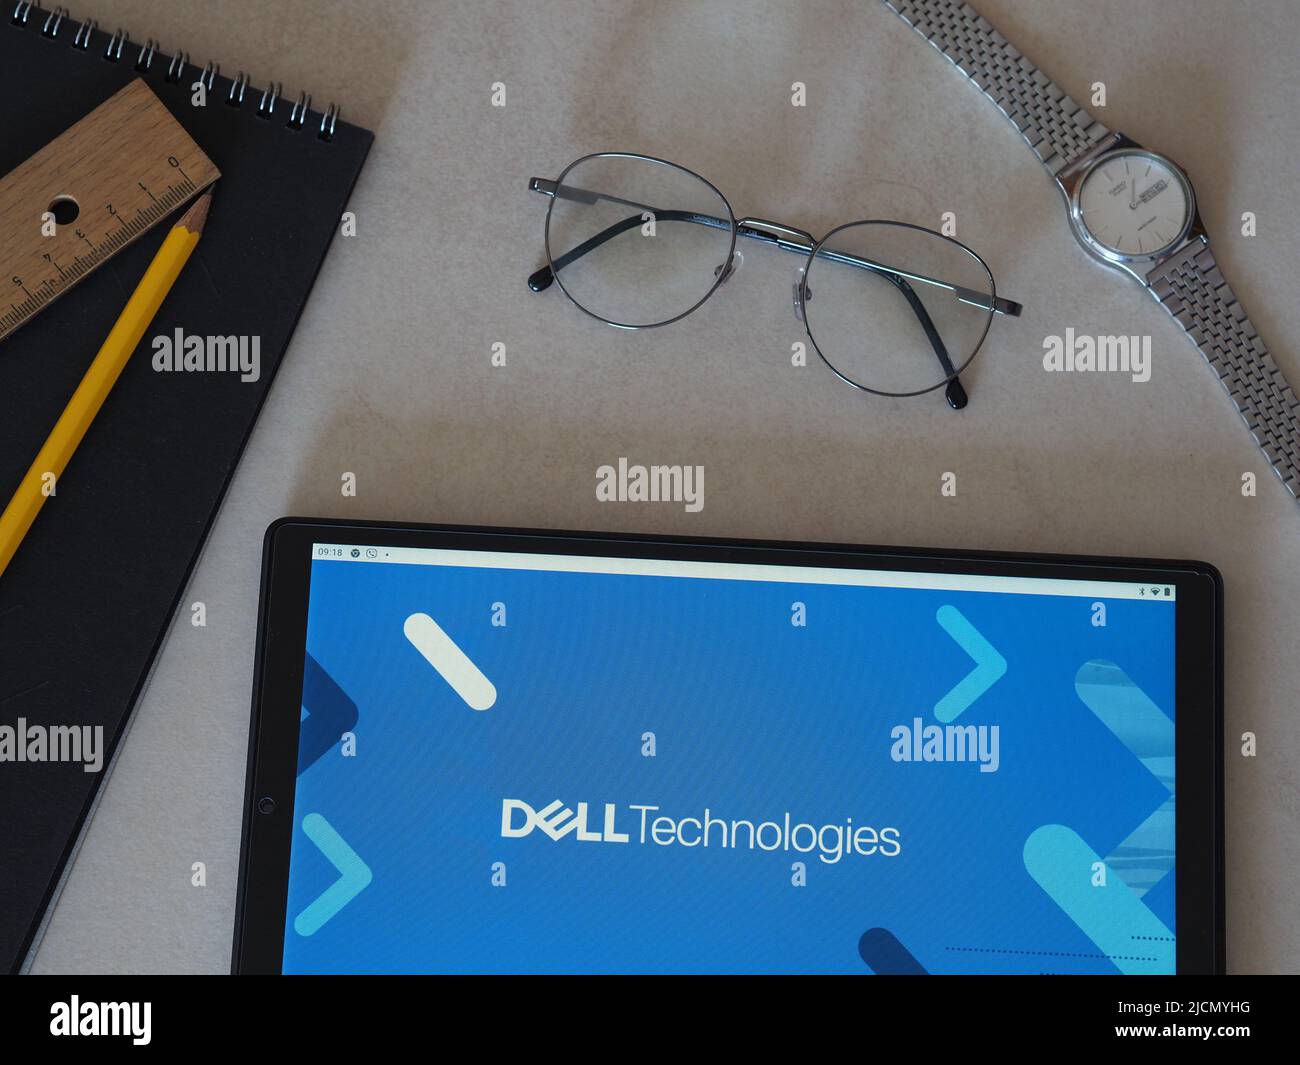 In dieser Abbildung wird das Dell Technologies-Logo auf einem Tablet angezeigt. Stockfoto